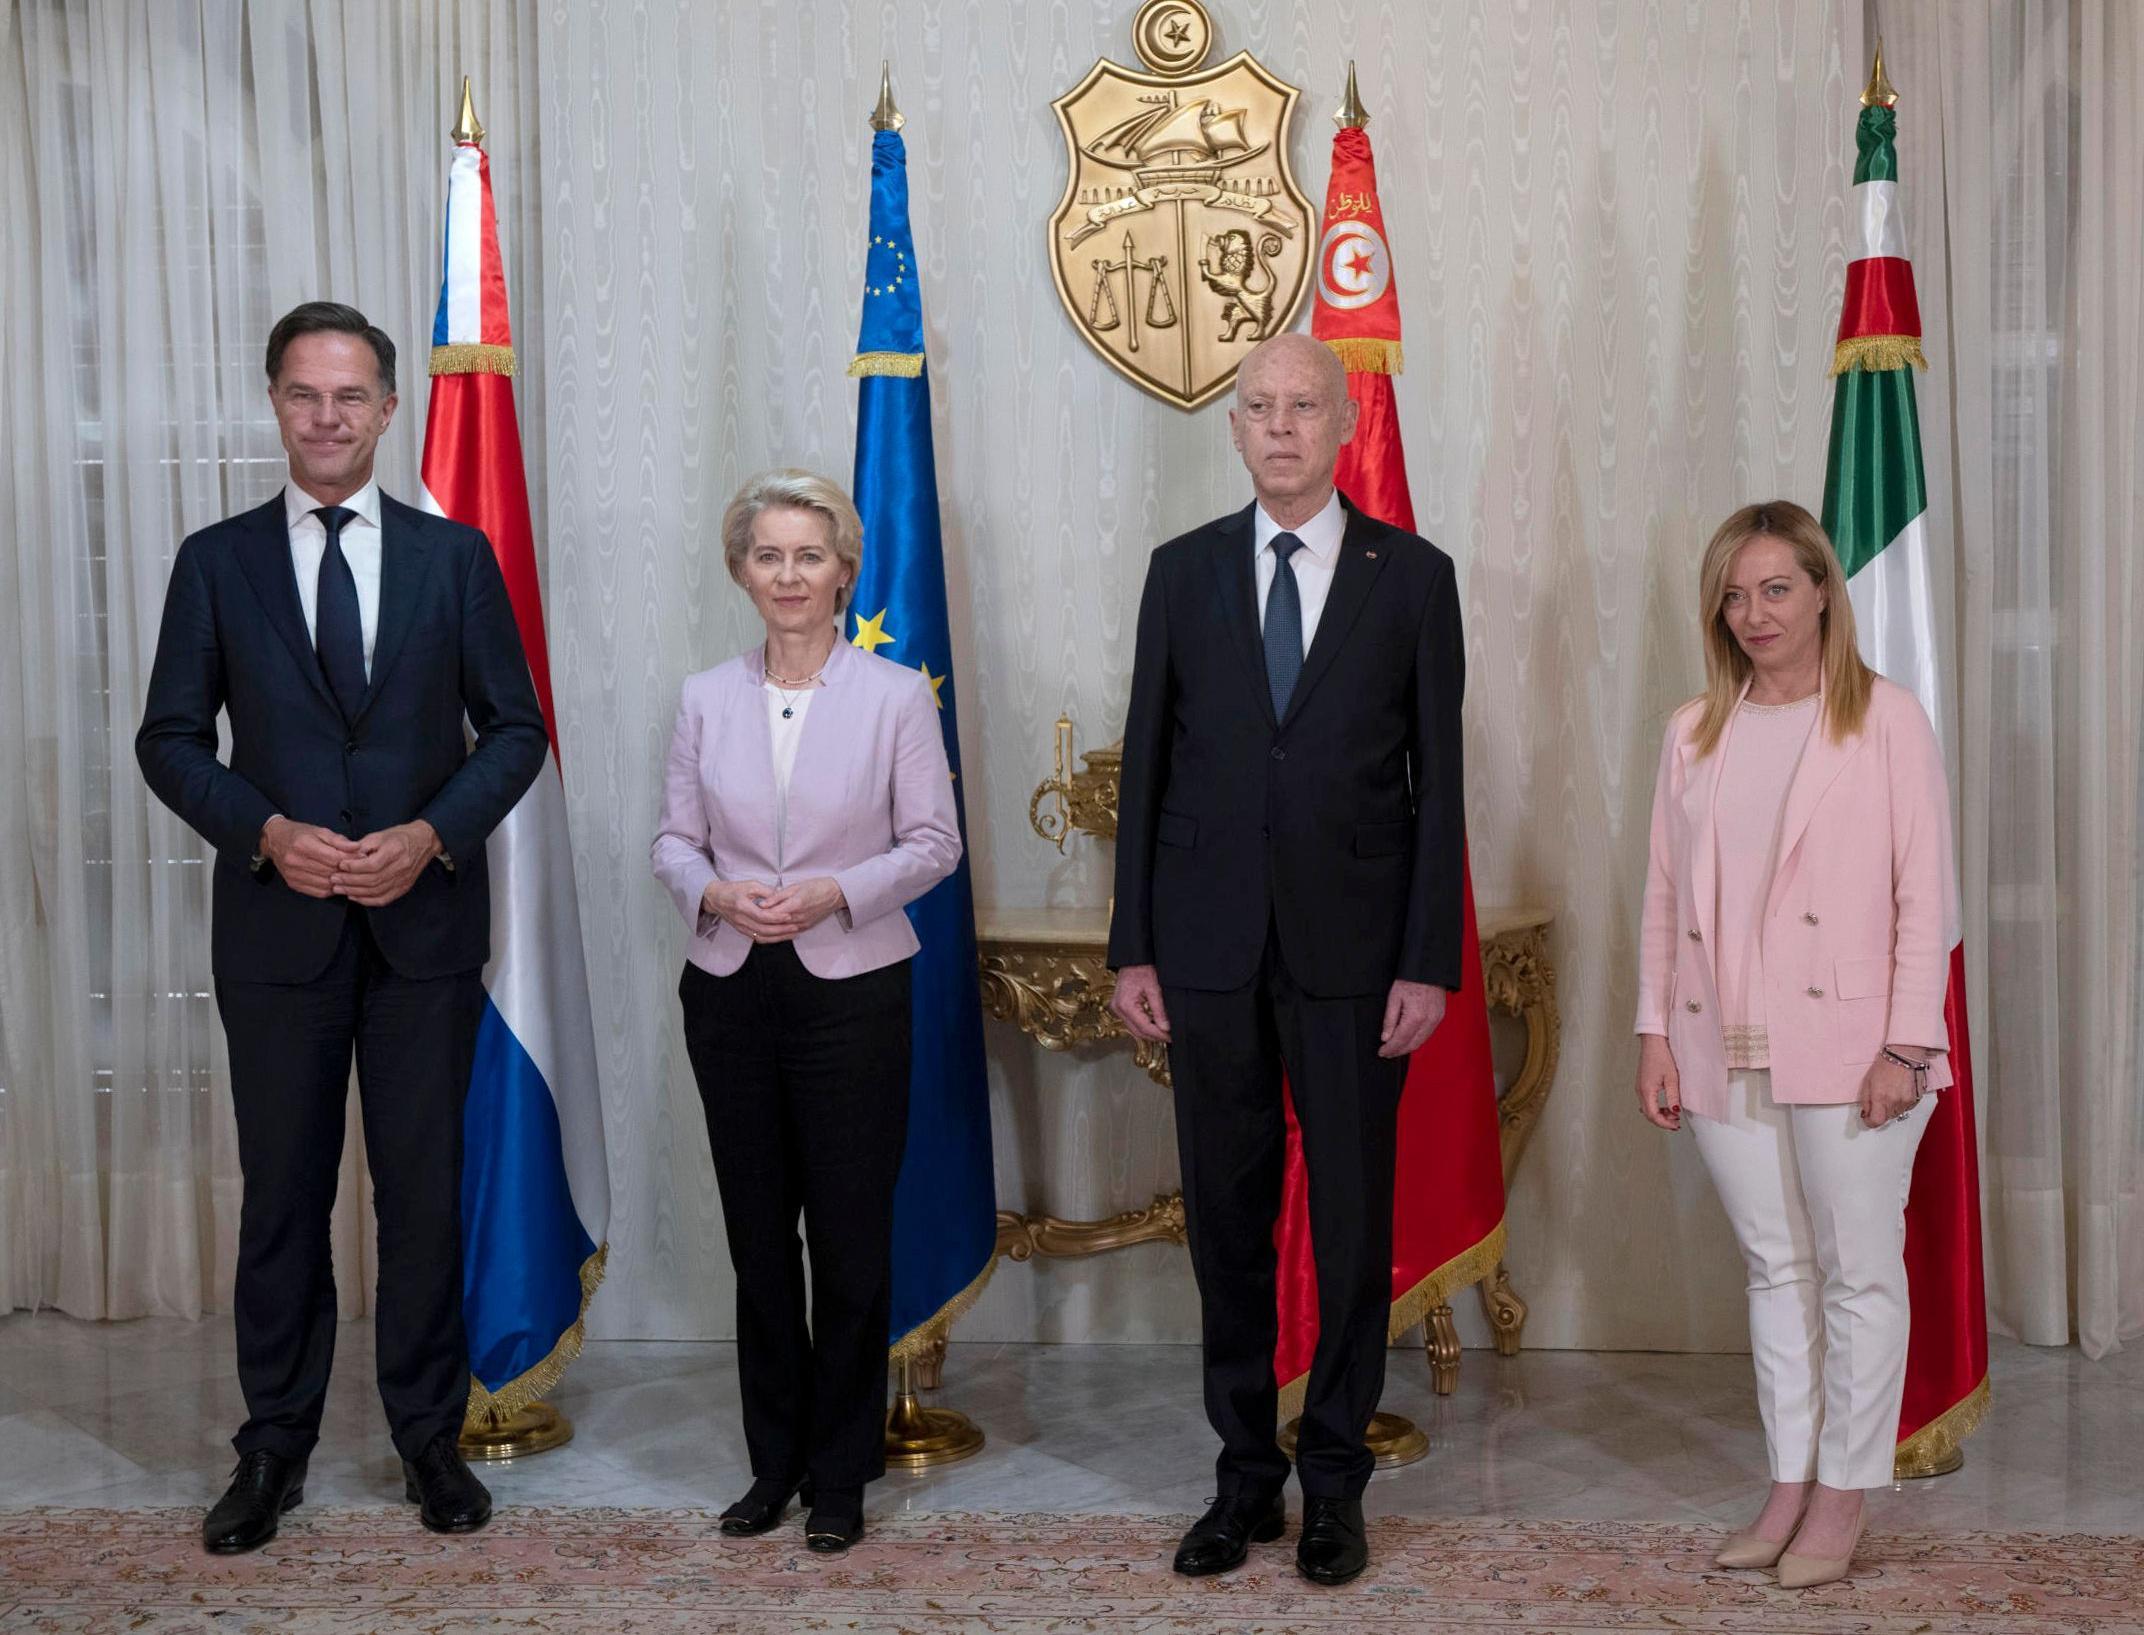 تُظهر الصورة (من اليسار إلى اليمين) رئيس الوزراء الهولندي ورئيس المفوضية الأوروبية والرئيس التونسي ورئيسة الوزراء الإيطالية وهم يقفون لالتقاط صورة فوتوغرافية قبل ذلك. في اجتماع مشترك بالقصر الرئاسي بقرطاج في تونس 11 يونيو - حزيران.2023.